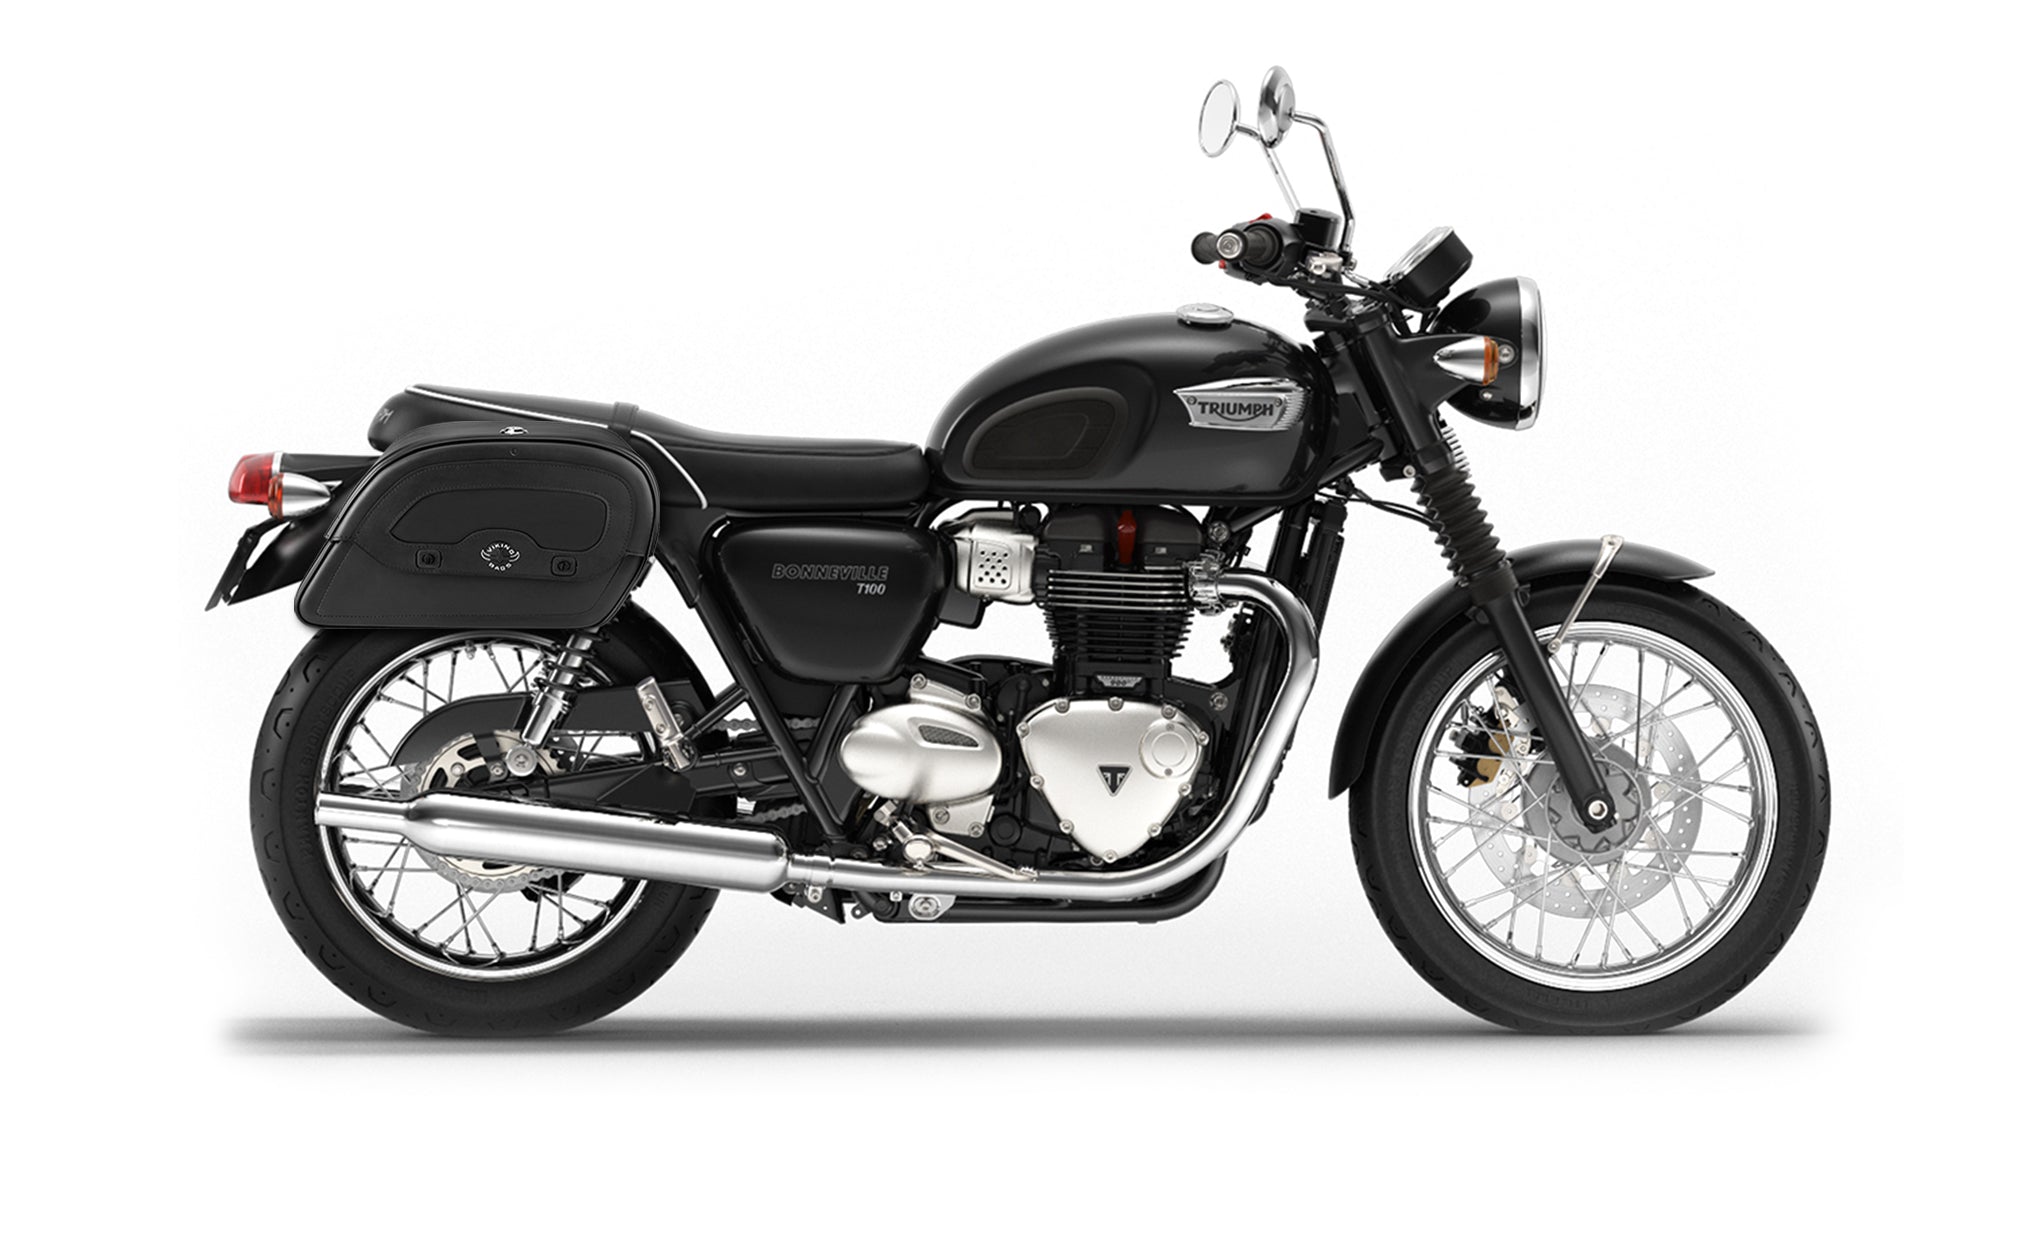 22L - Warrior Medium Quick-Mount Triumph Bonneville T100 Motorcycle Saddlebags @expand